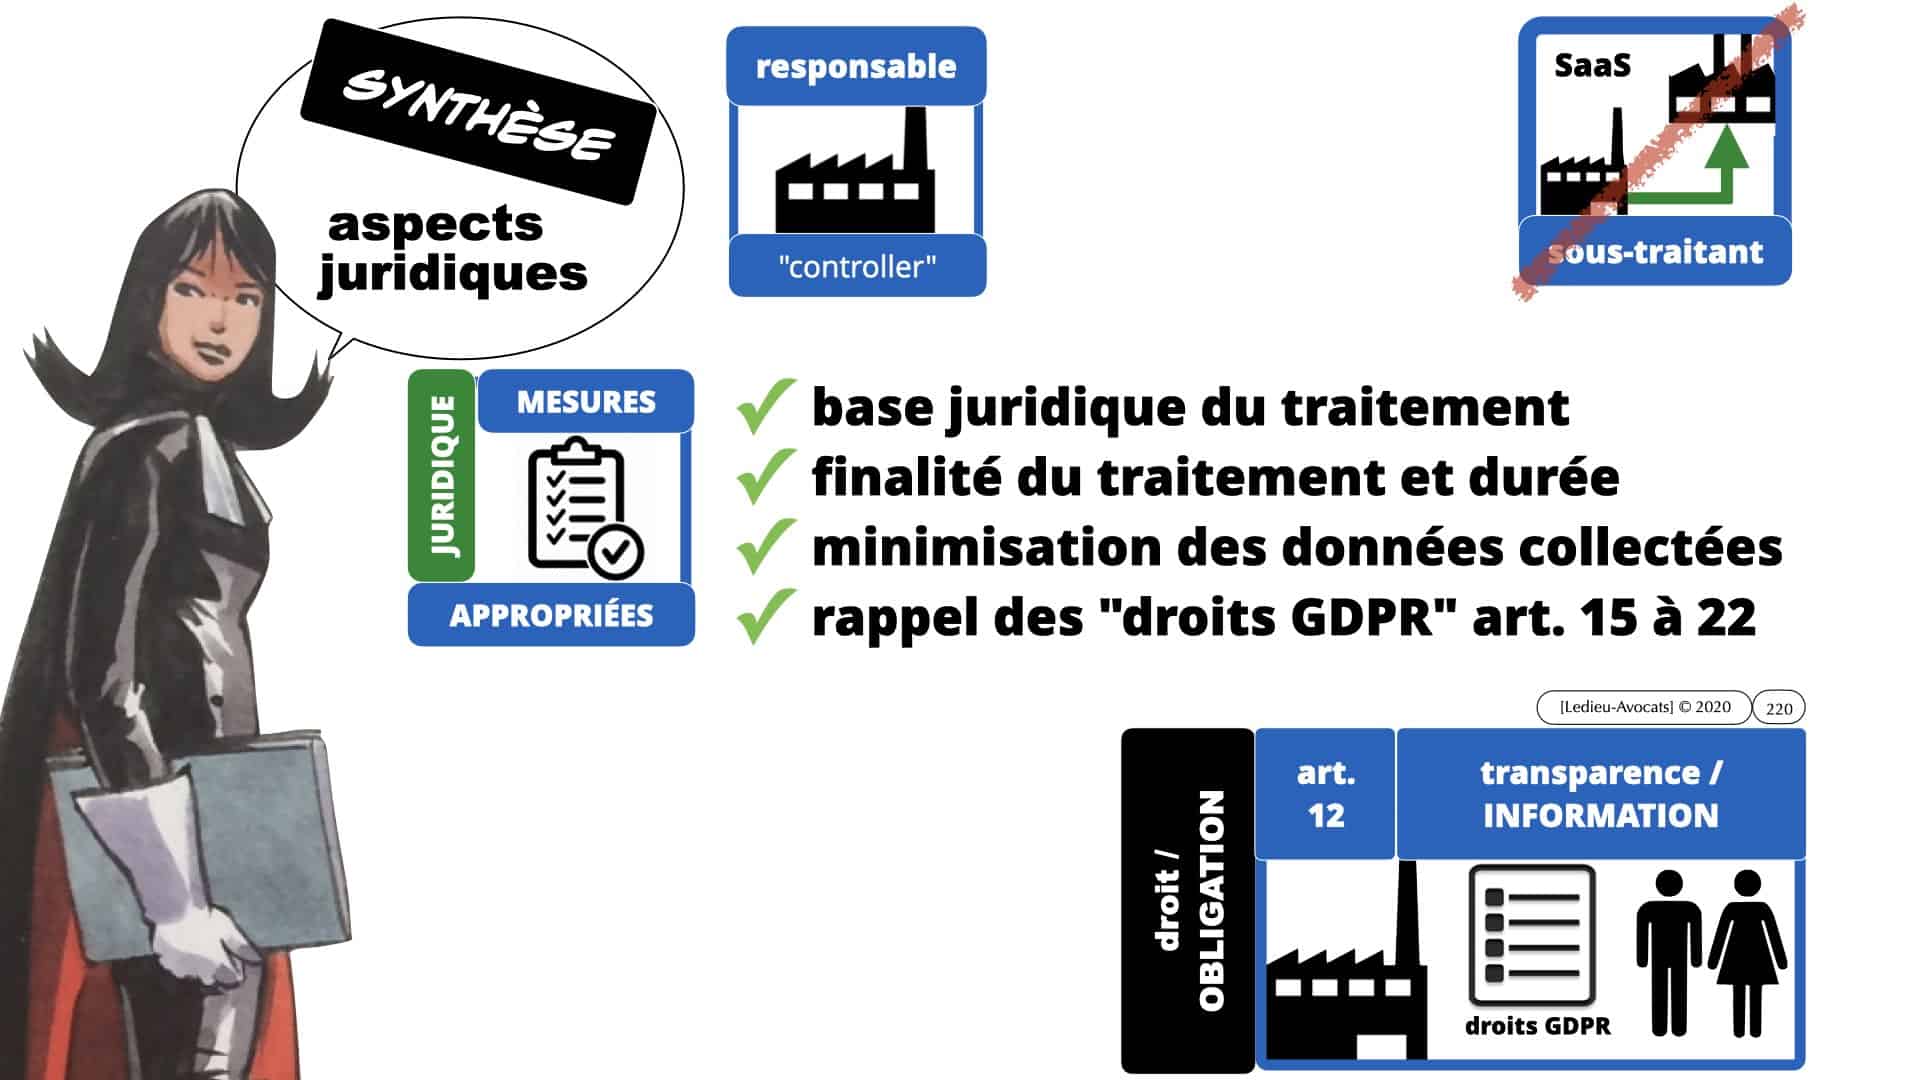 RGPD e-Privacy données personnelles jurisprudence formation Lamy Les Echos 10-02-2021 ©Ledieu-Avocats.220